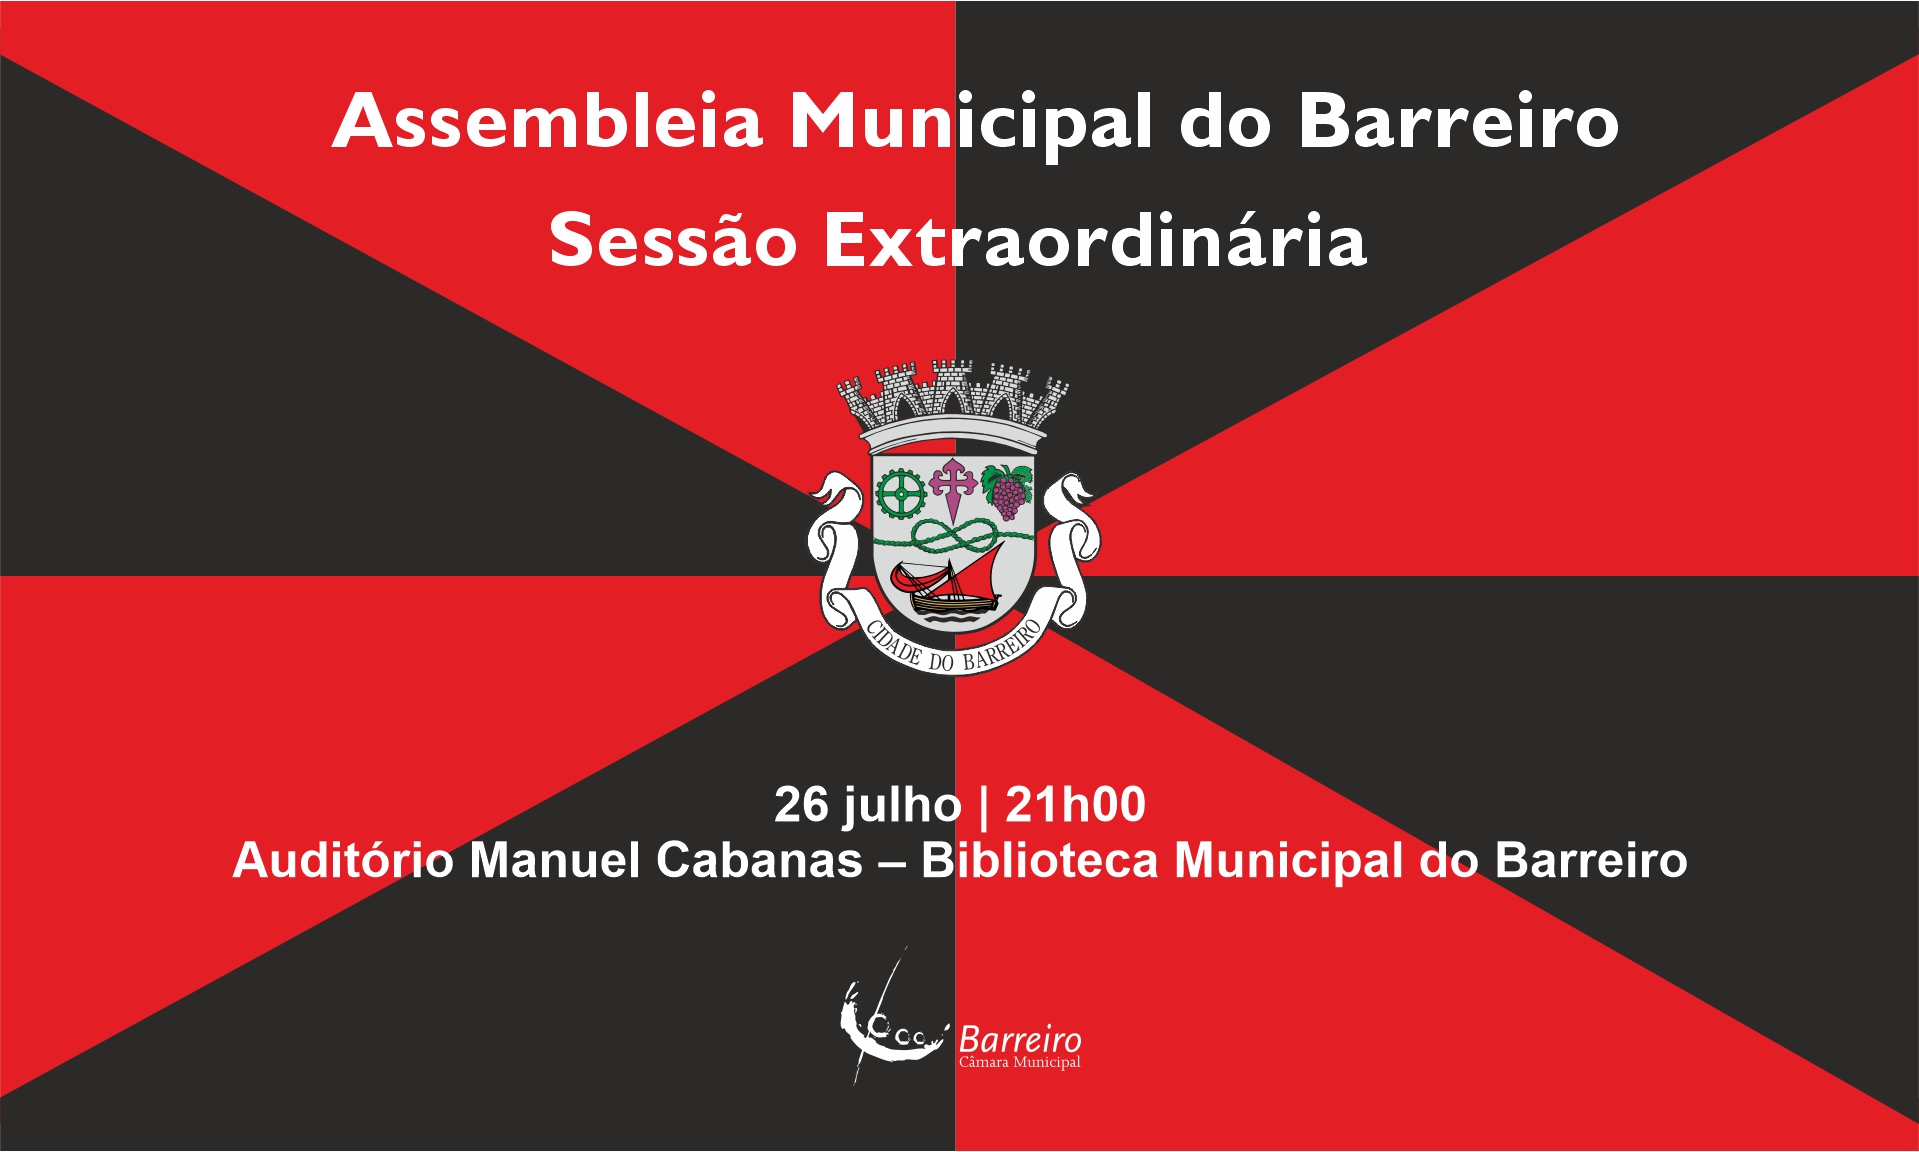 Assembleia Municipal do Barreiro | Sessão Extraordinária a 26 de julho